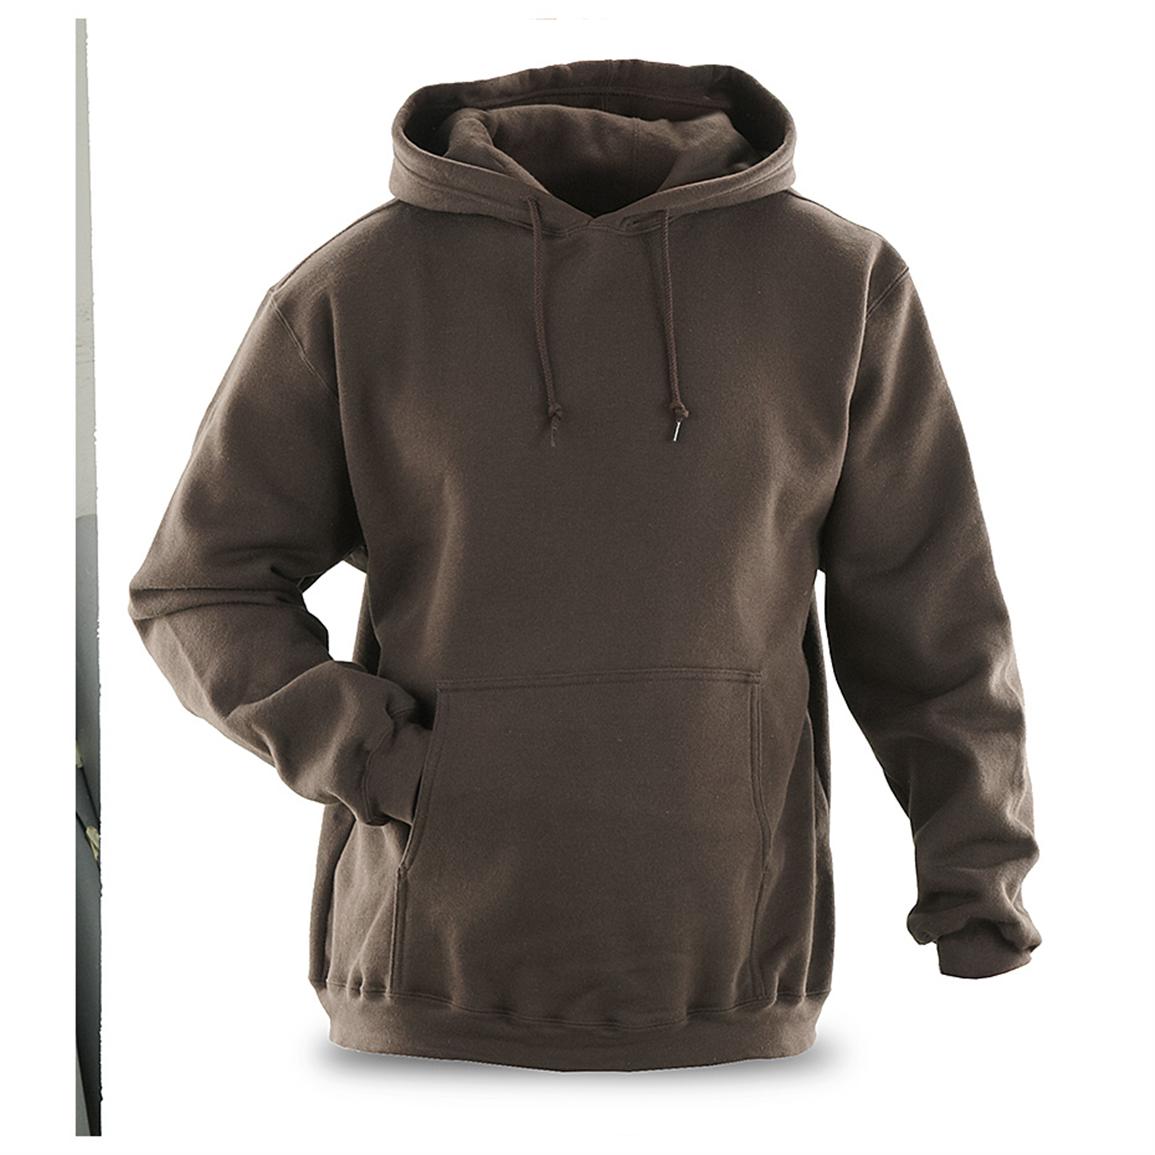 Reebok® Hooded Sweatshirt - 578959, Sweatshirts & Hoodies at Sportsman ...